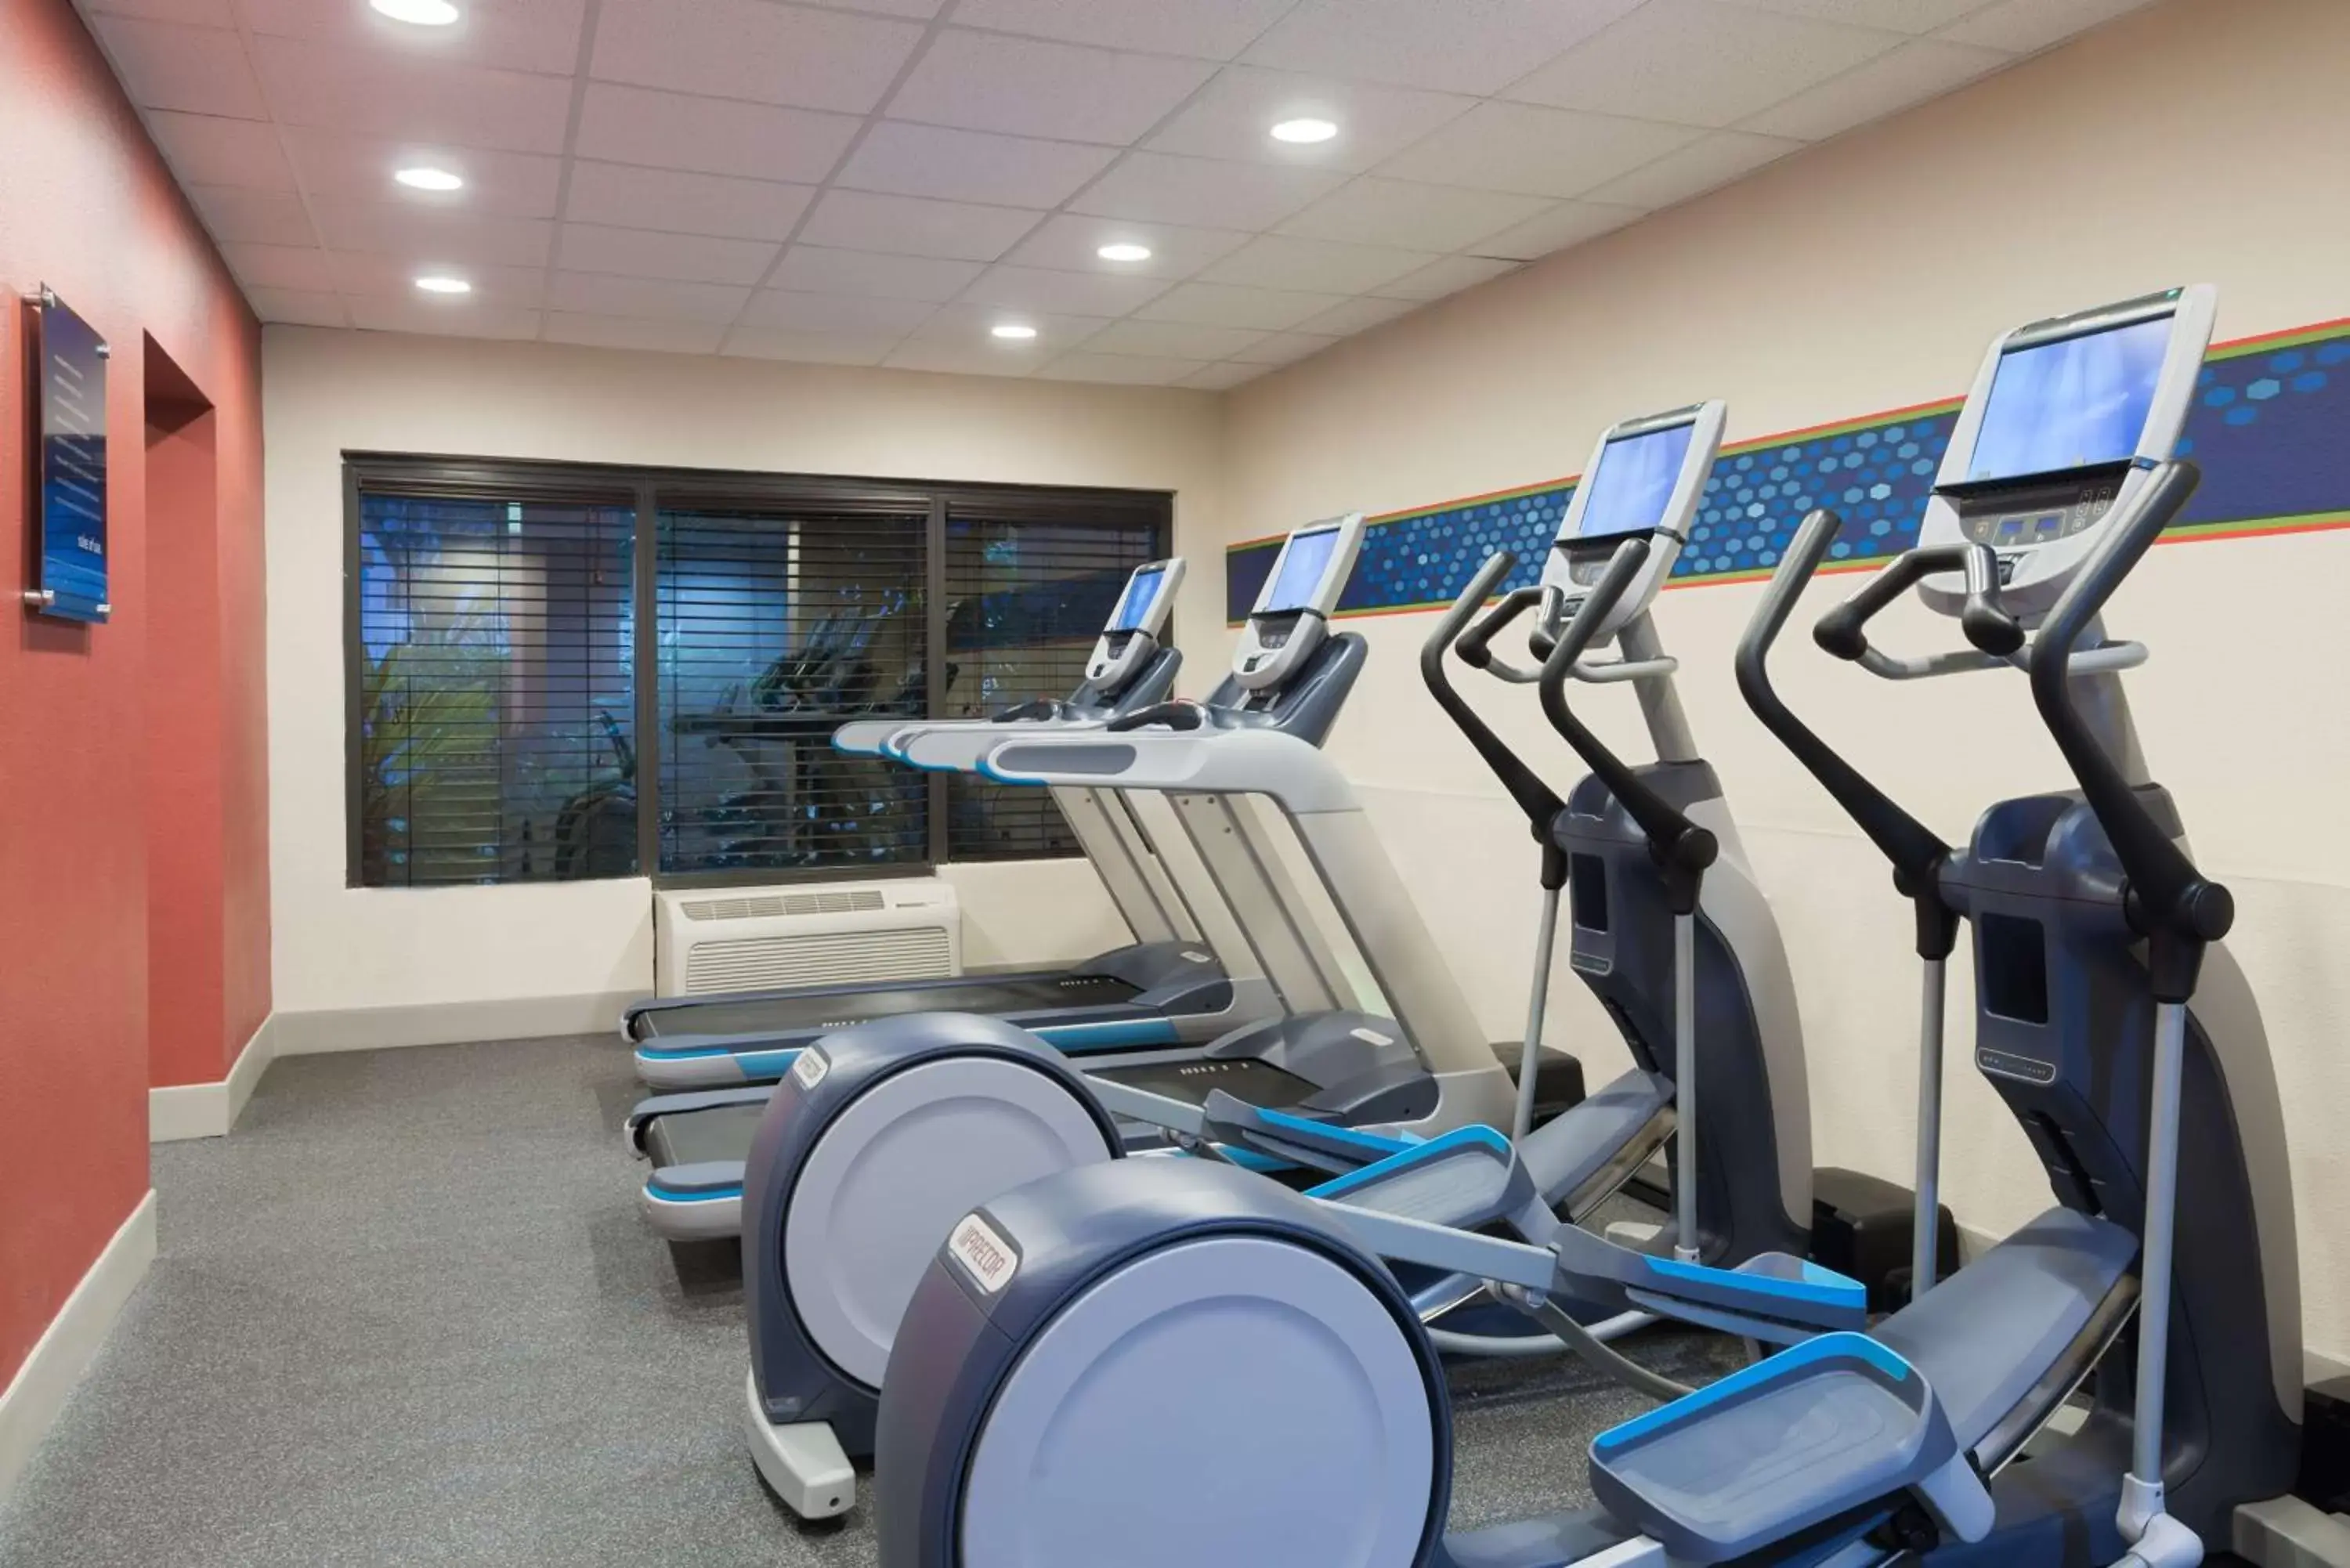 Fitness centre/facilities, Fitness Center/Facilities in Hampton Inn Ellenton/Bradenton